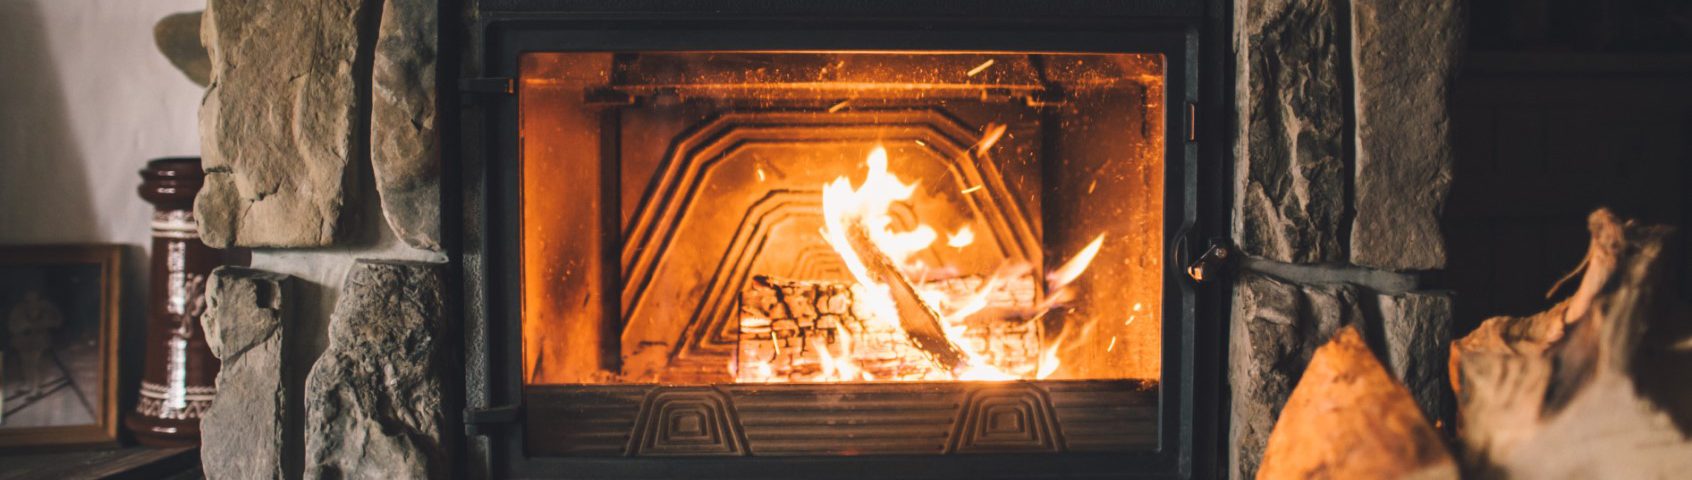 Cozy Fireplace 1892